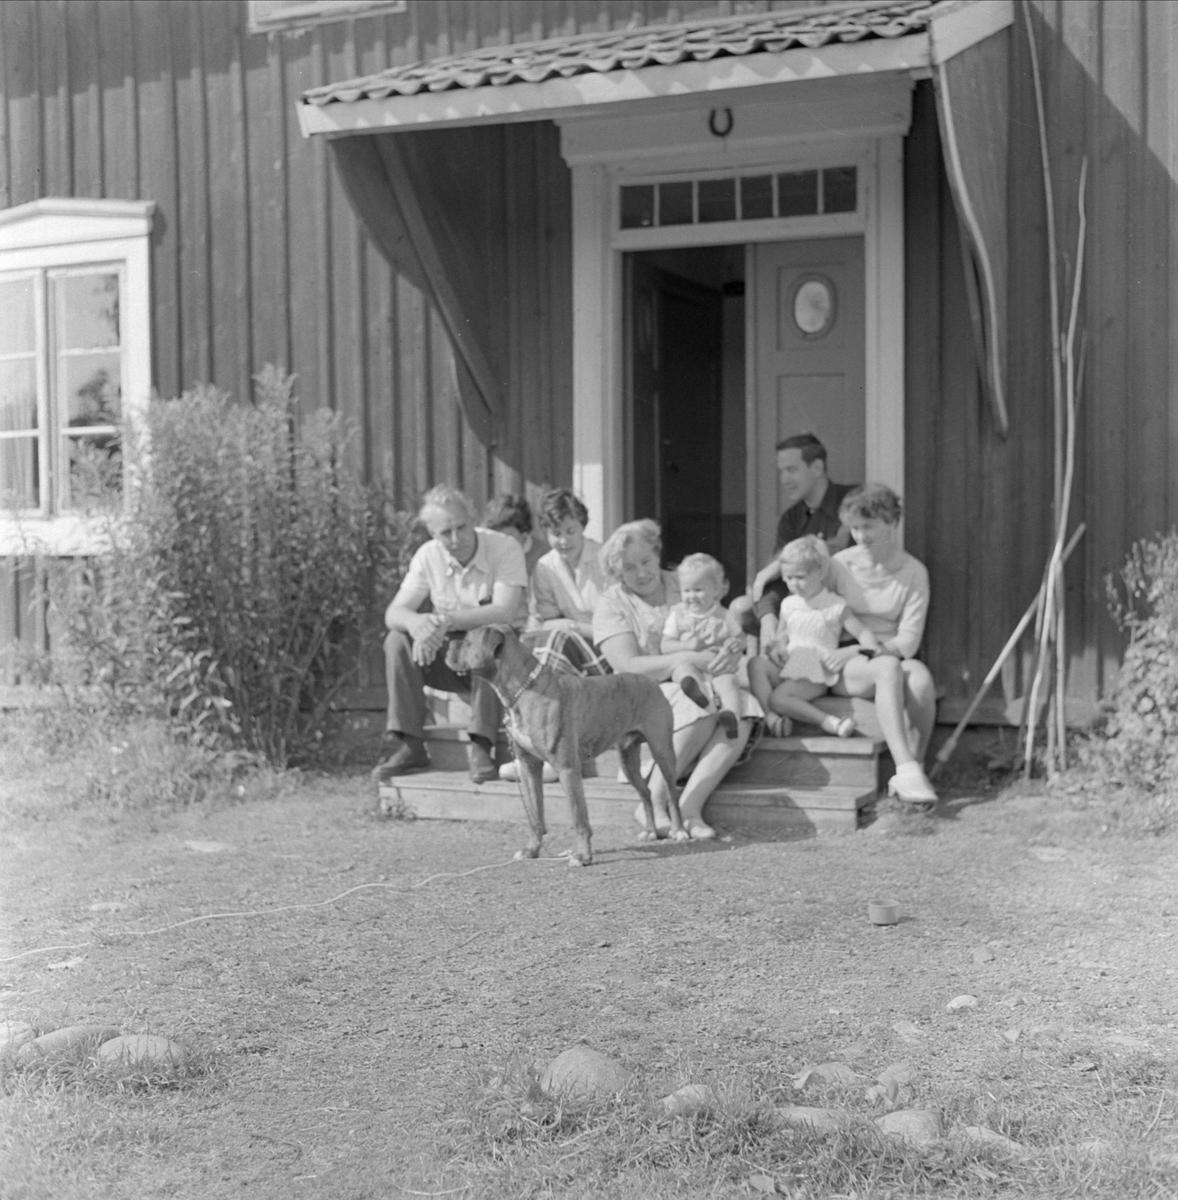 Gunnar Sundgrens familj på trappan utanför bostadshus, sannolikt Uppsala